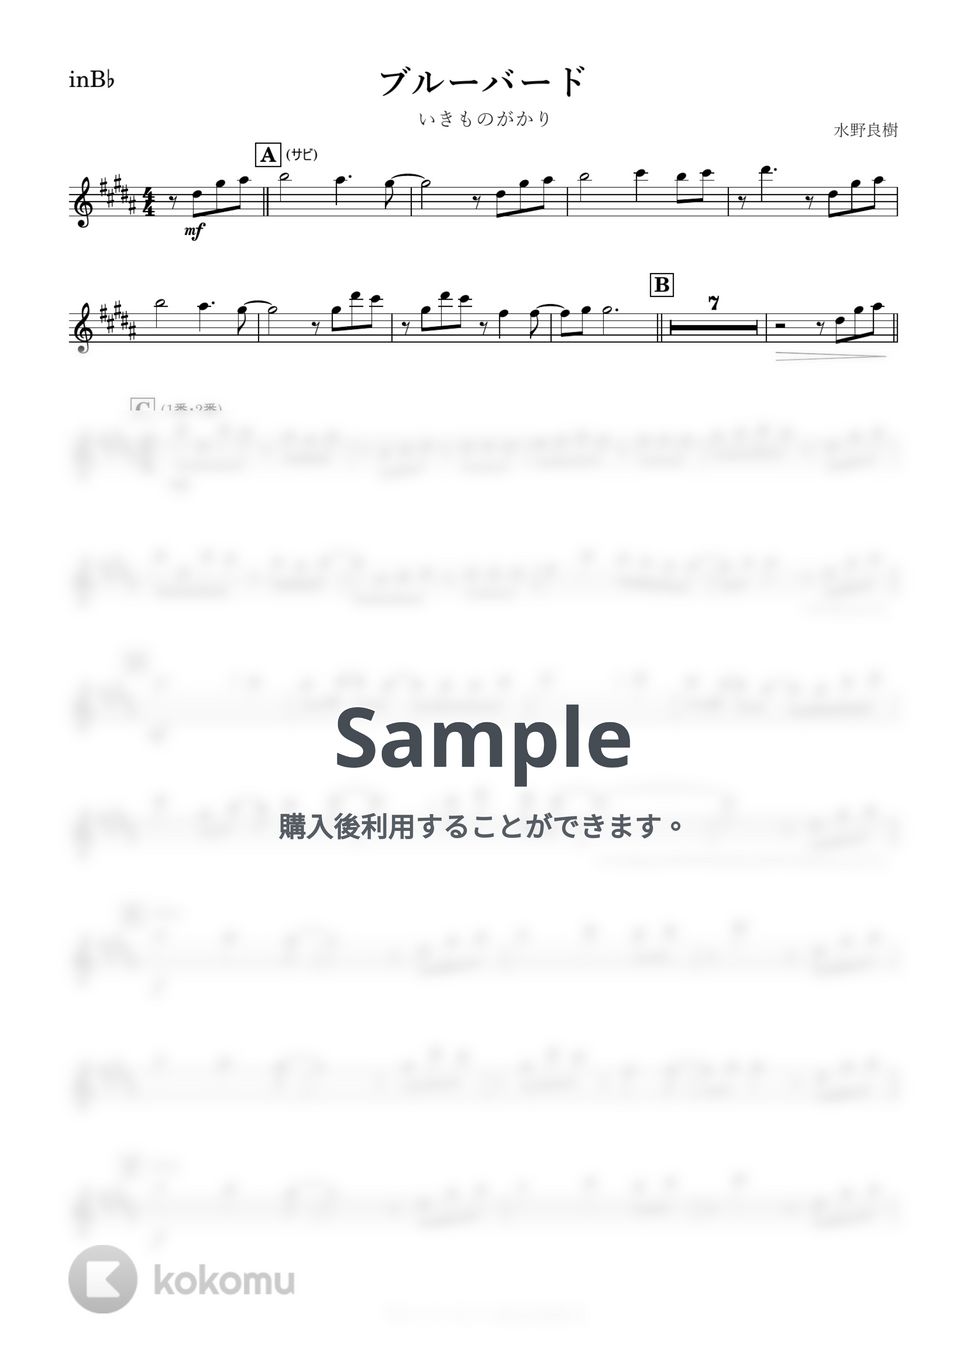 いきものがかり - ブルーバード (B♭) by kanamusic